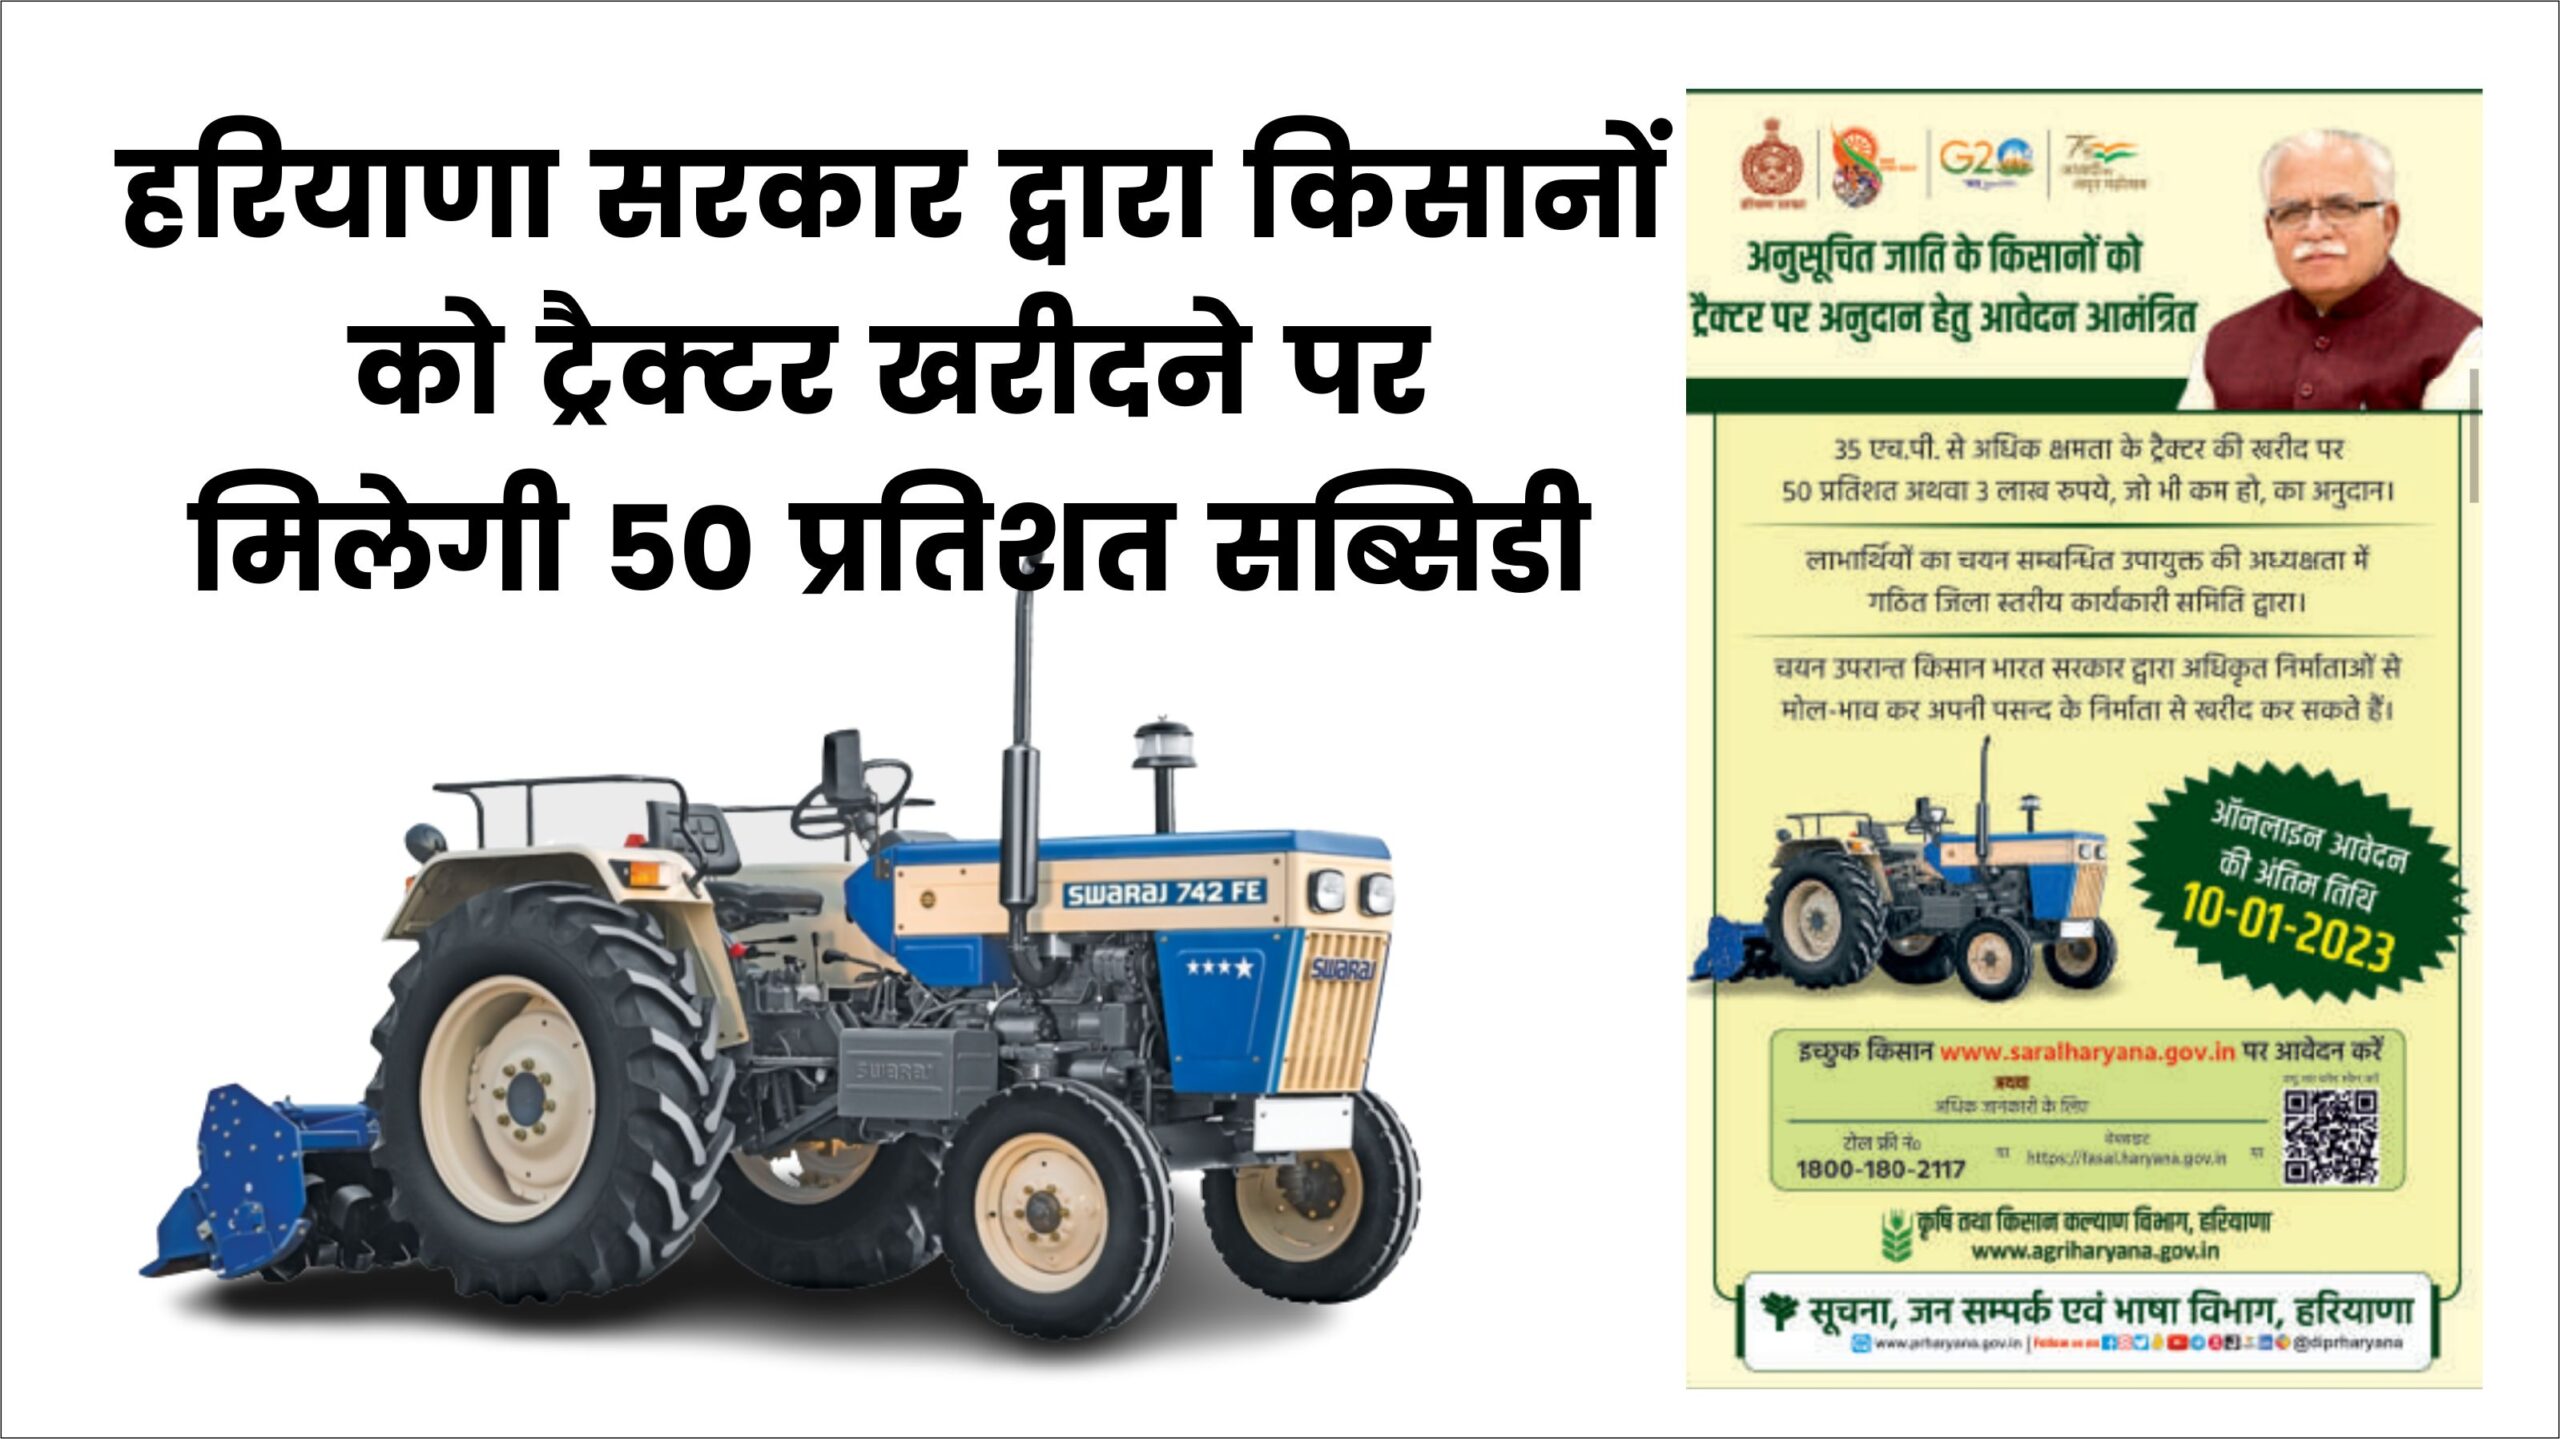 प्रधानमंत्री किसान ट्रैक्टर योजना, हरियाणा के किसानों को सब्सिडी पर मिलेगा ट्रैक्टर, यहाँ से करें ऑनलाइन आवेदन